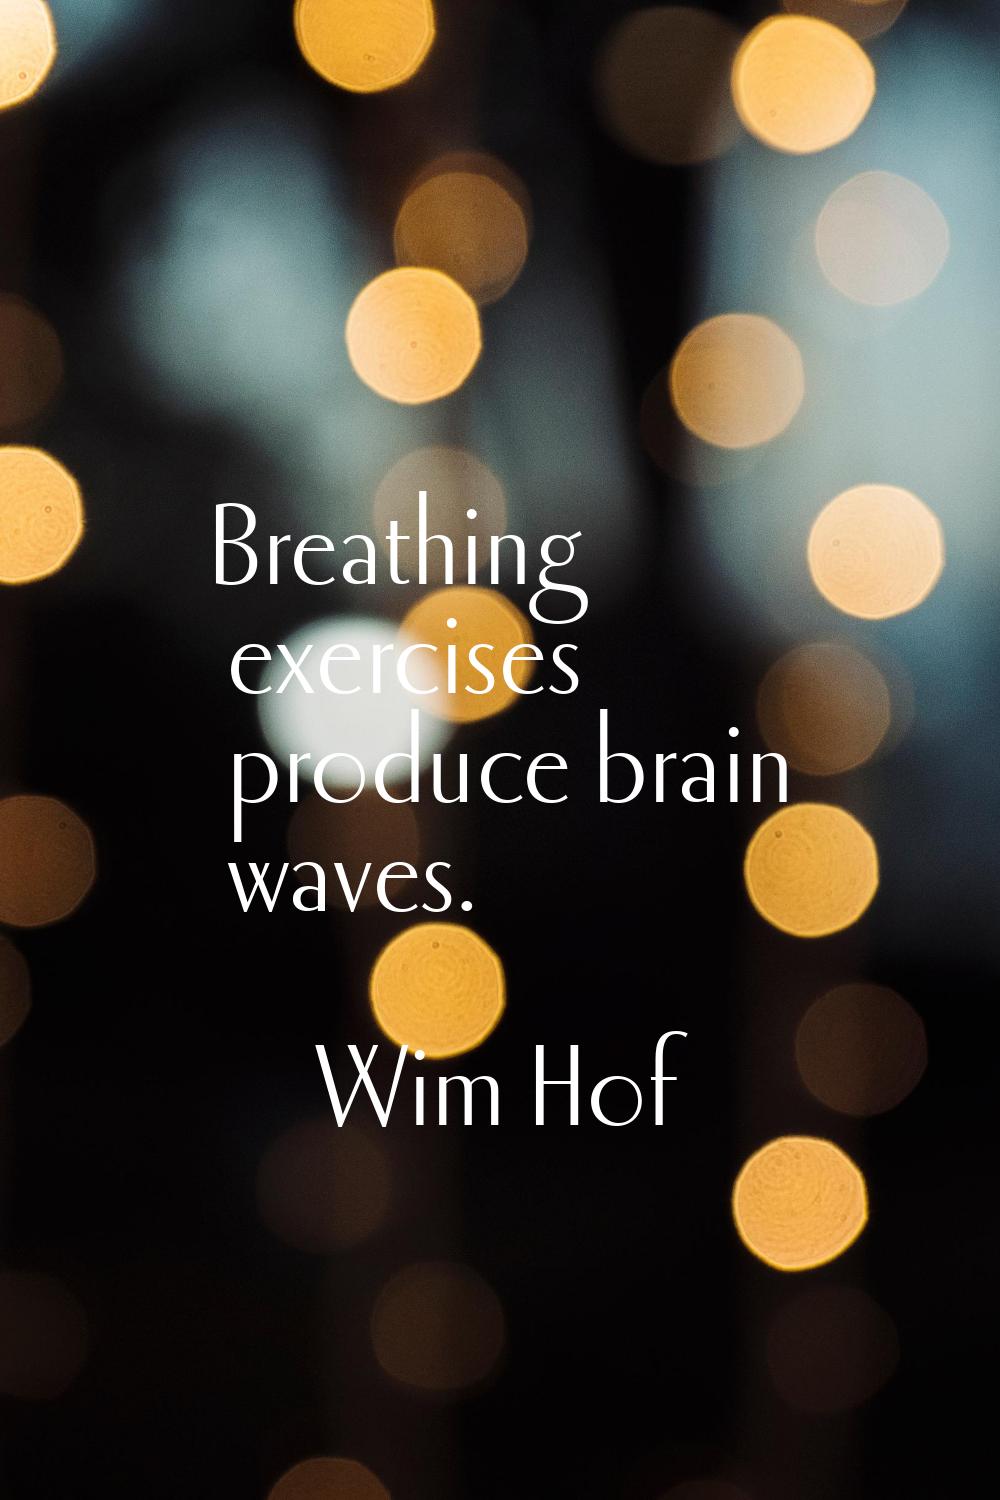 Breathing exercises produce brain waves.